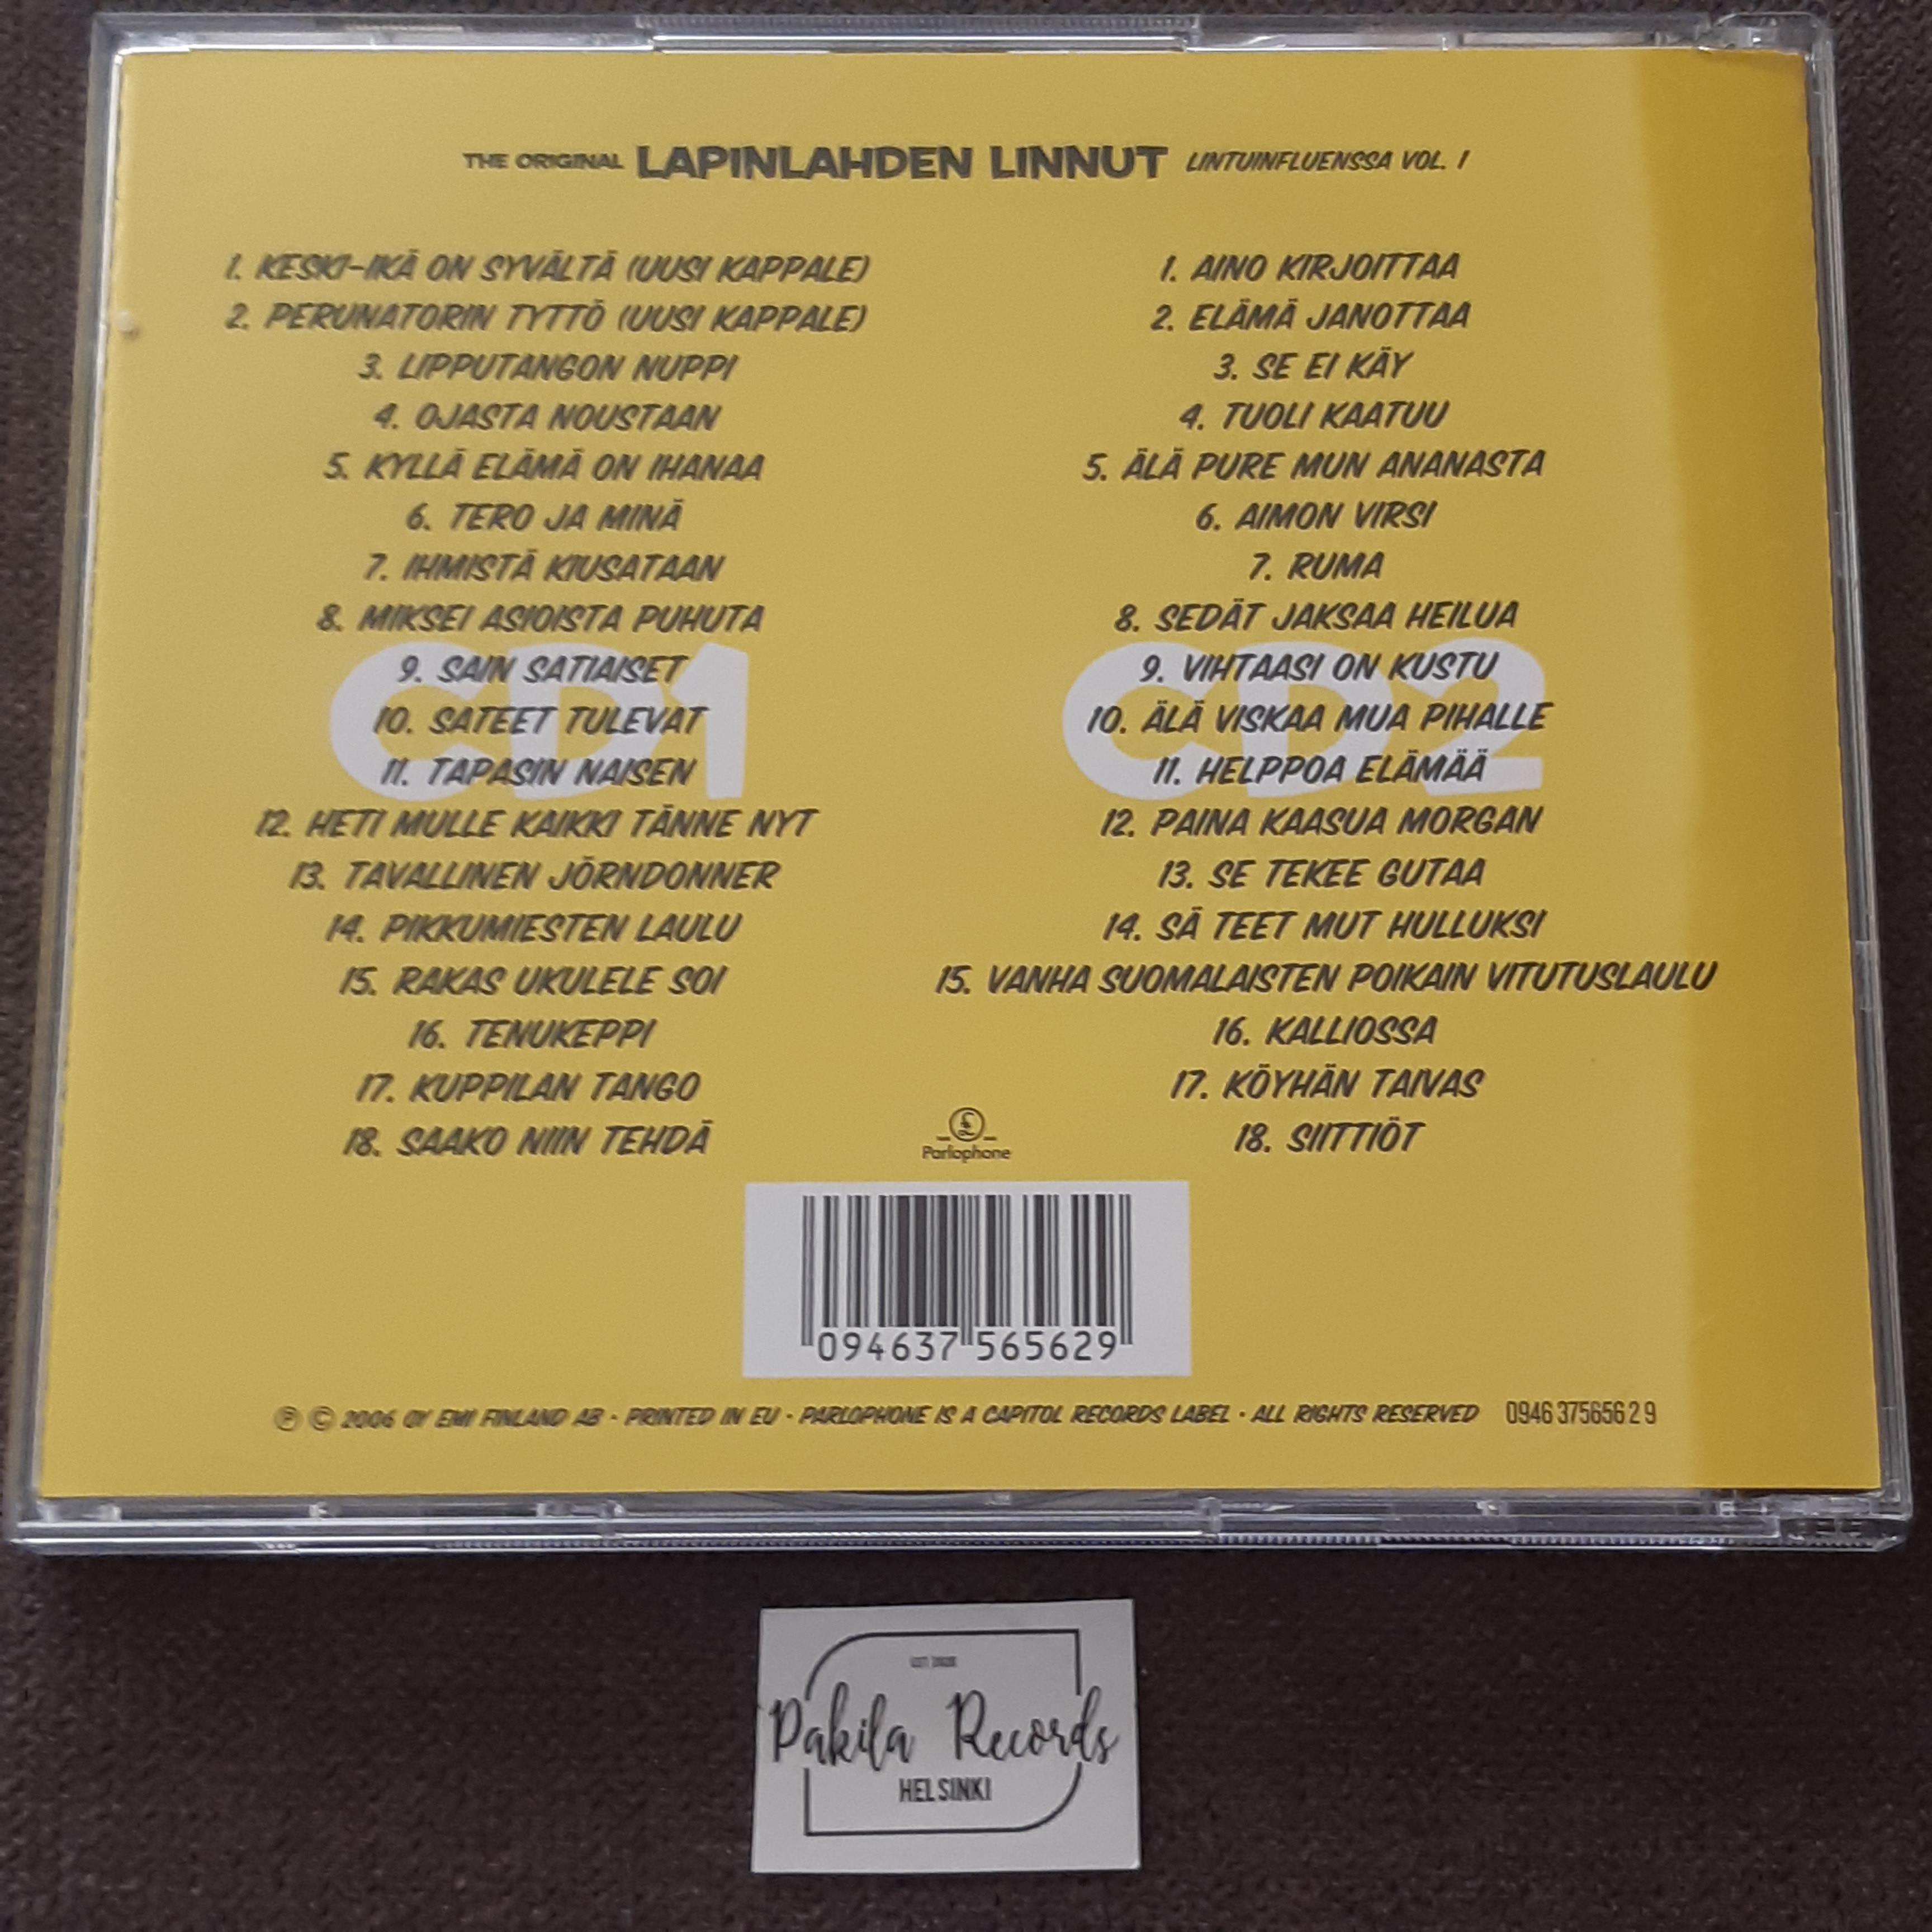 Lapinlahden Linnut - Lintuinfluenssa Vol. 1 - 2 CD (käytetty)